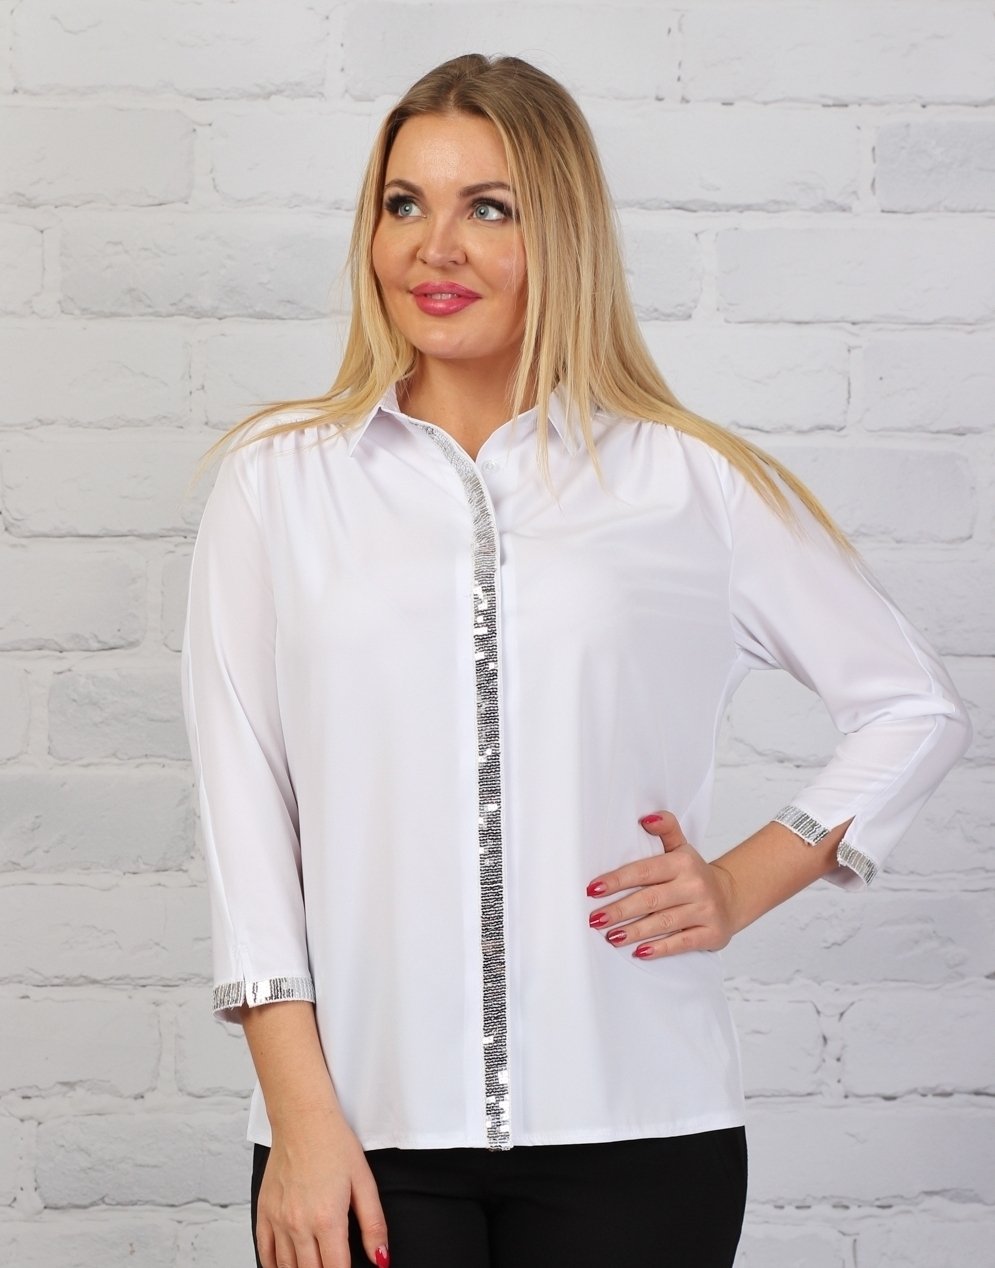 Женская блузка недорого купить валберис. Фабрика Алона блузки. Блузки на валберис. Белая блузка. Блуза белая.